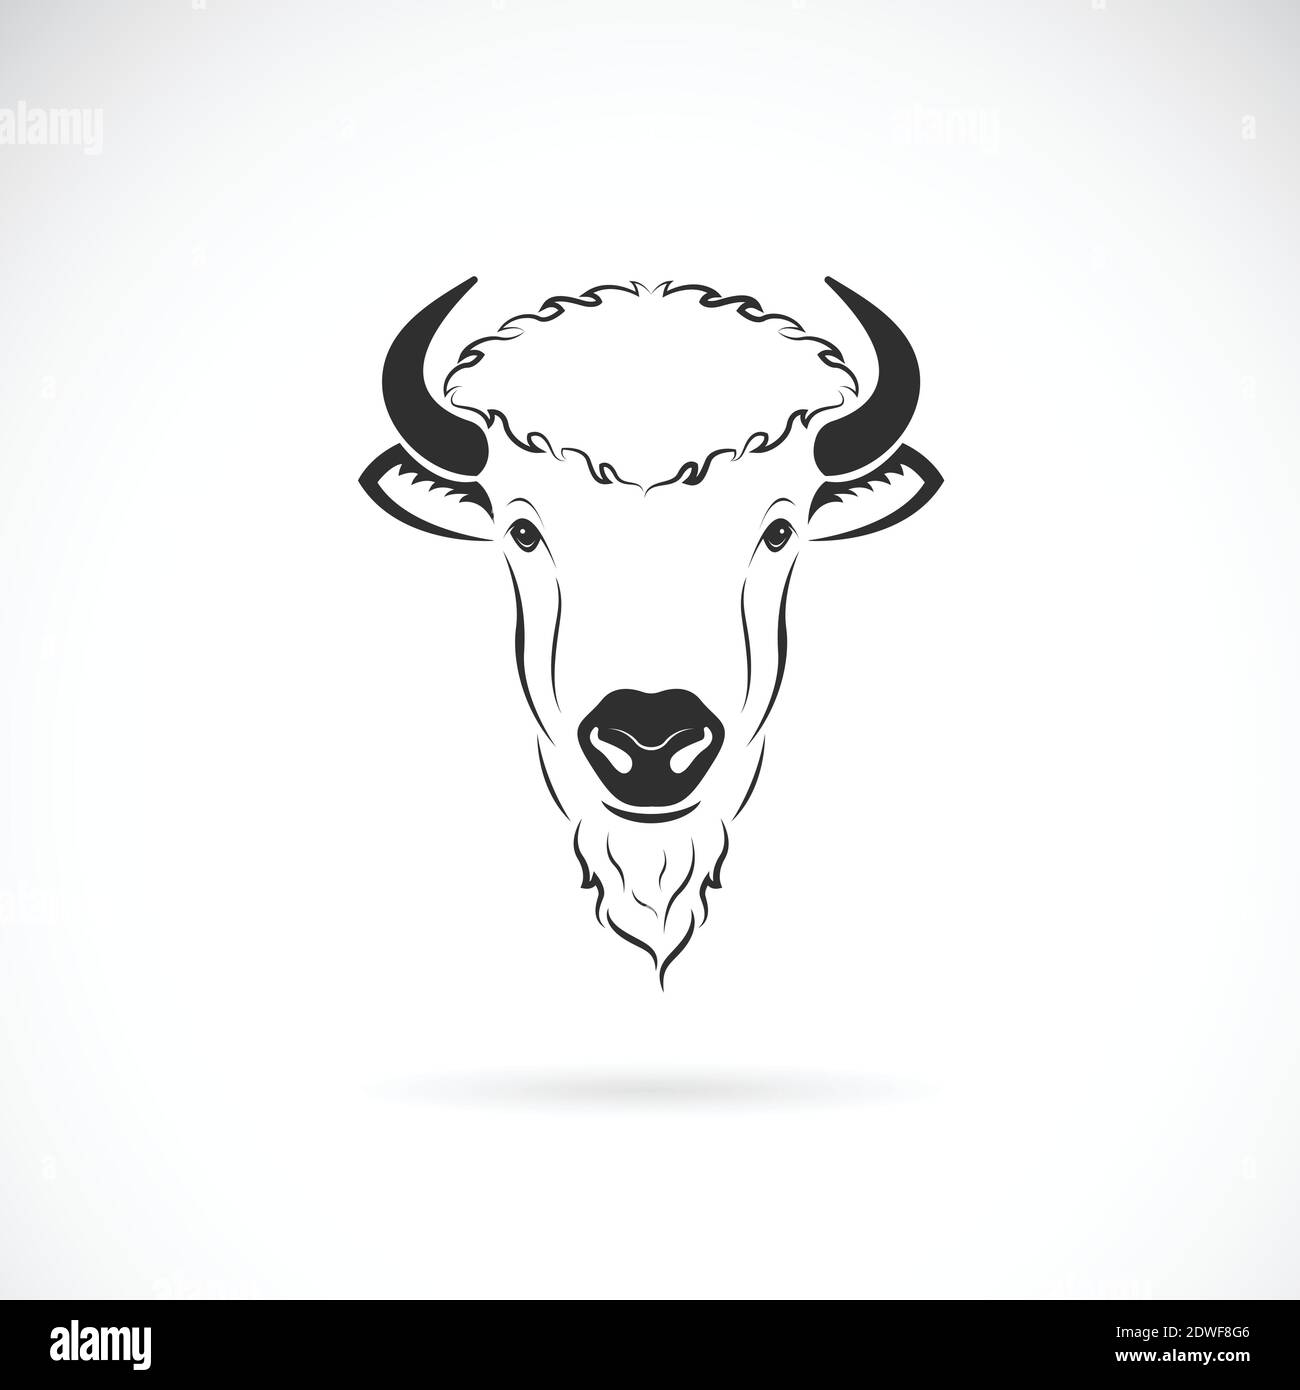 Motif vectoriel de la tête de bison sur fond blanc. Animaux sauvages. Logos ou icônes de bisons. Illustration vectorielle superposée facile à modifier. Illustration de Vecteur